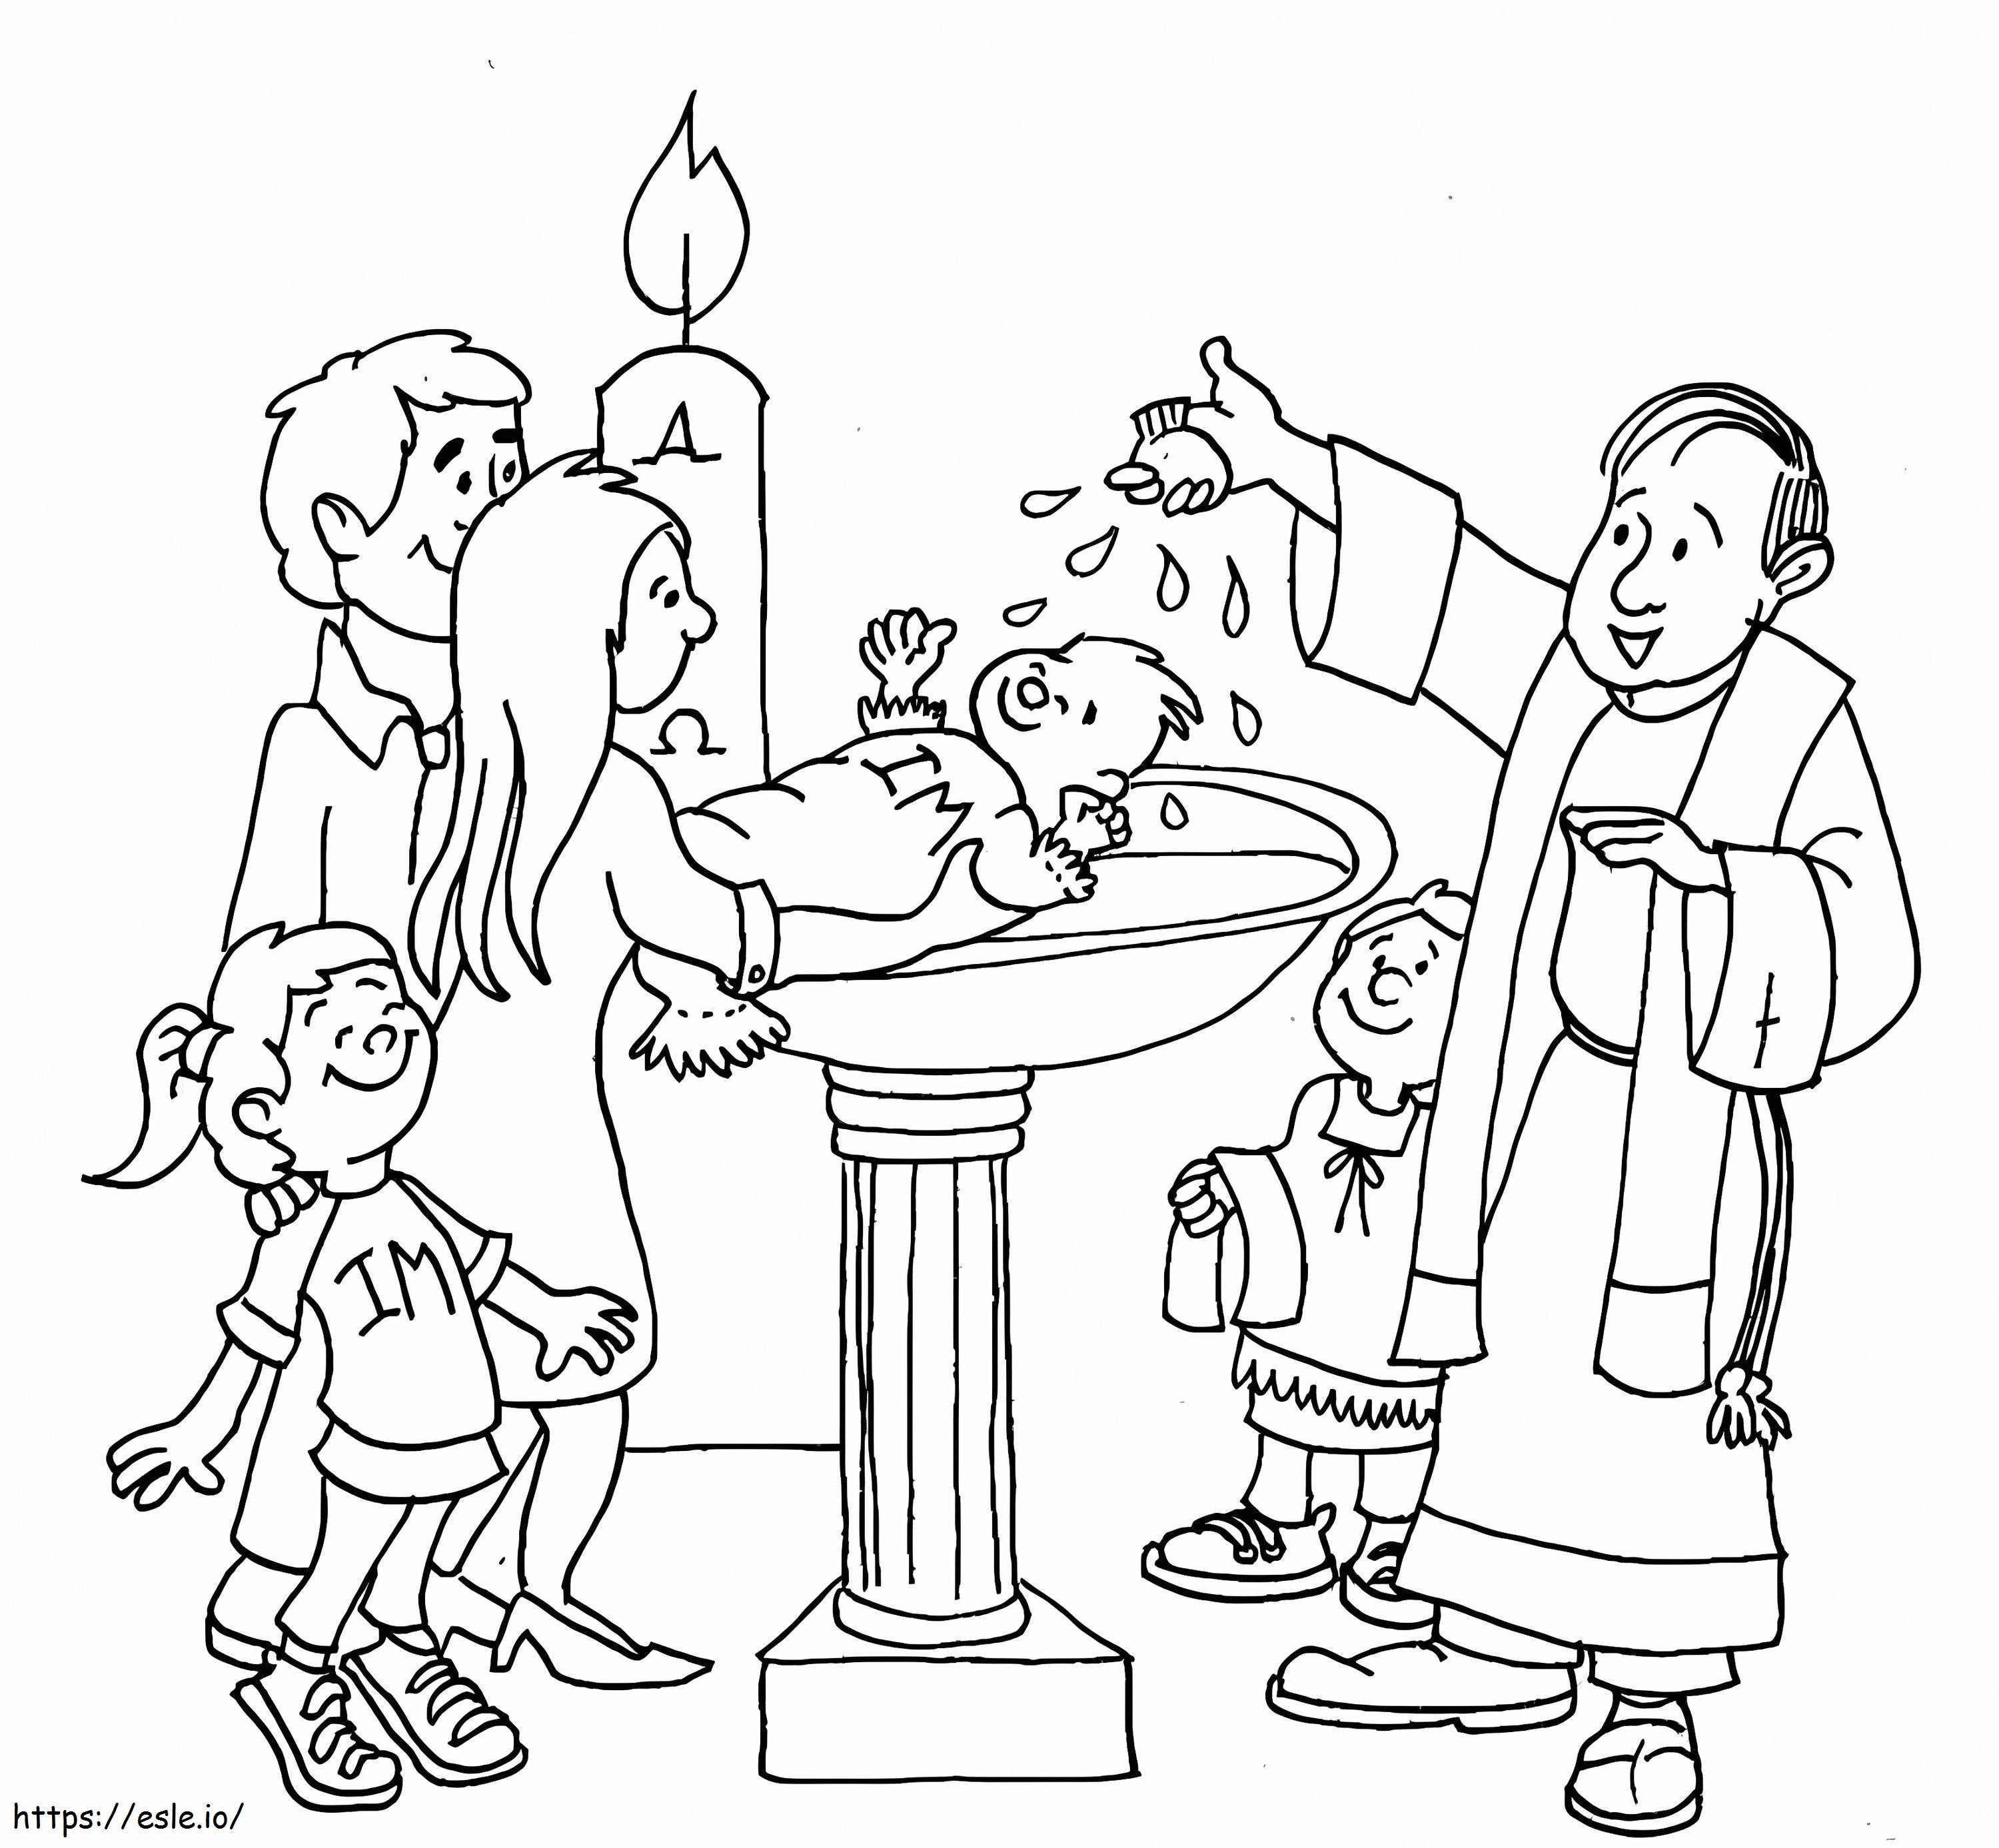 Drucken Sie die Taufe aus ausmalbilder